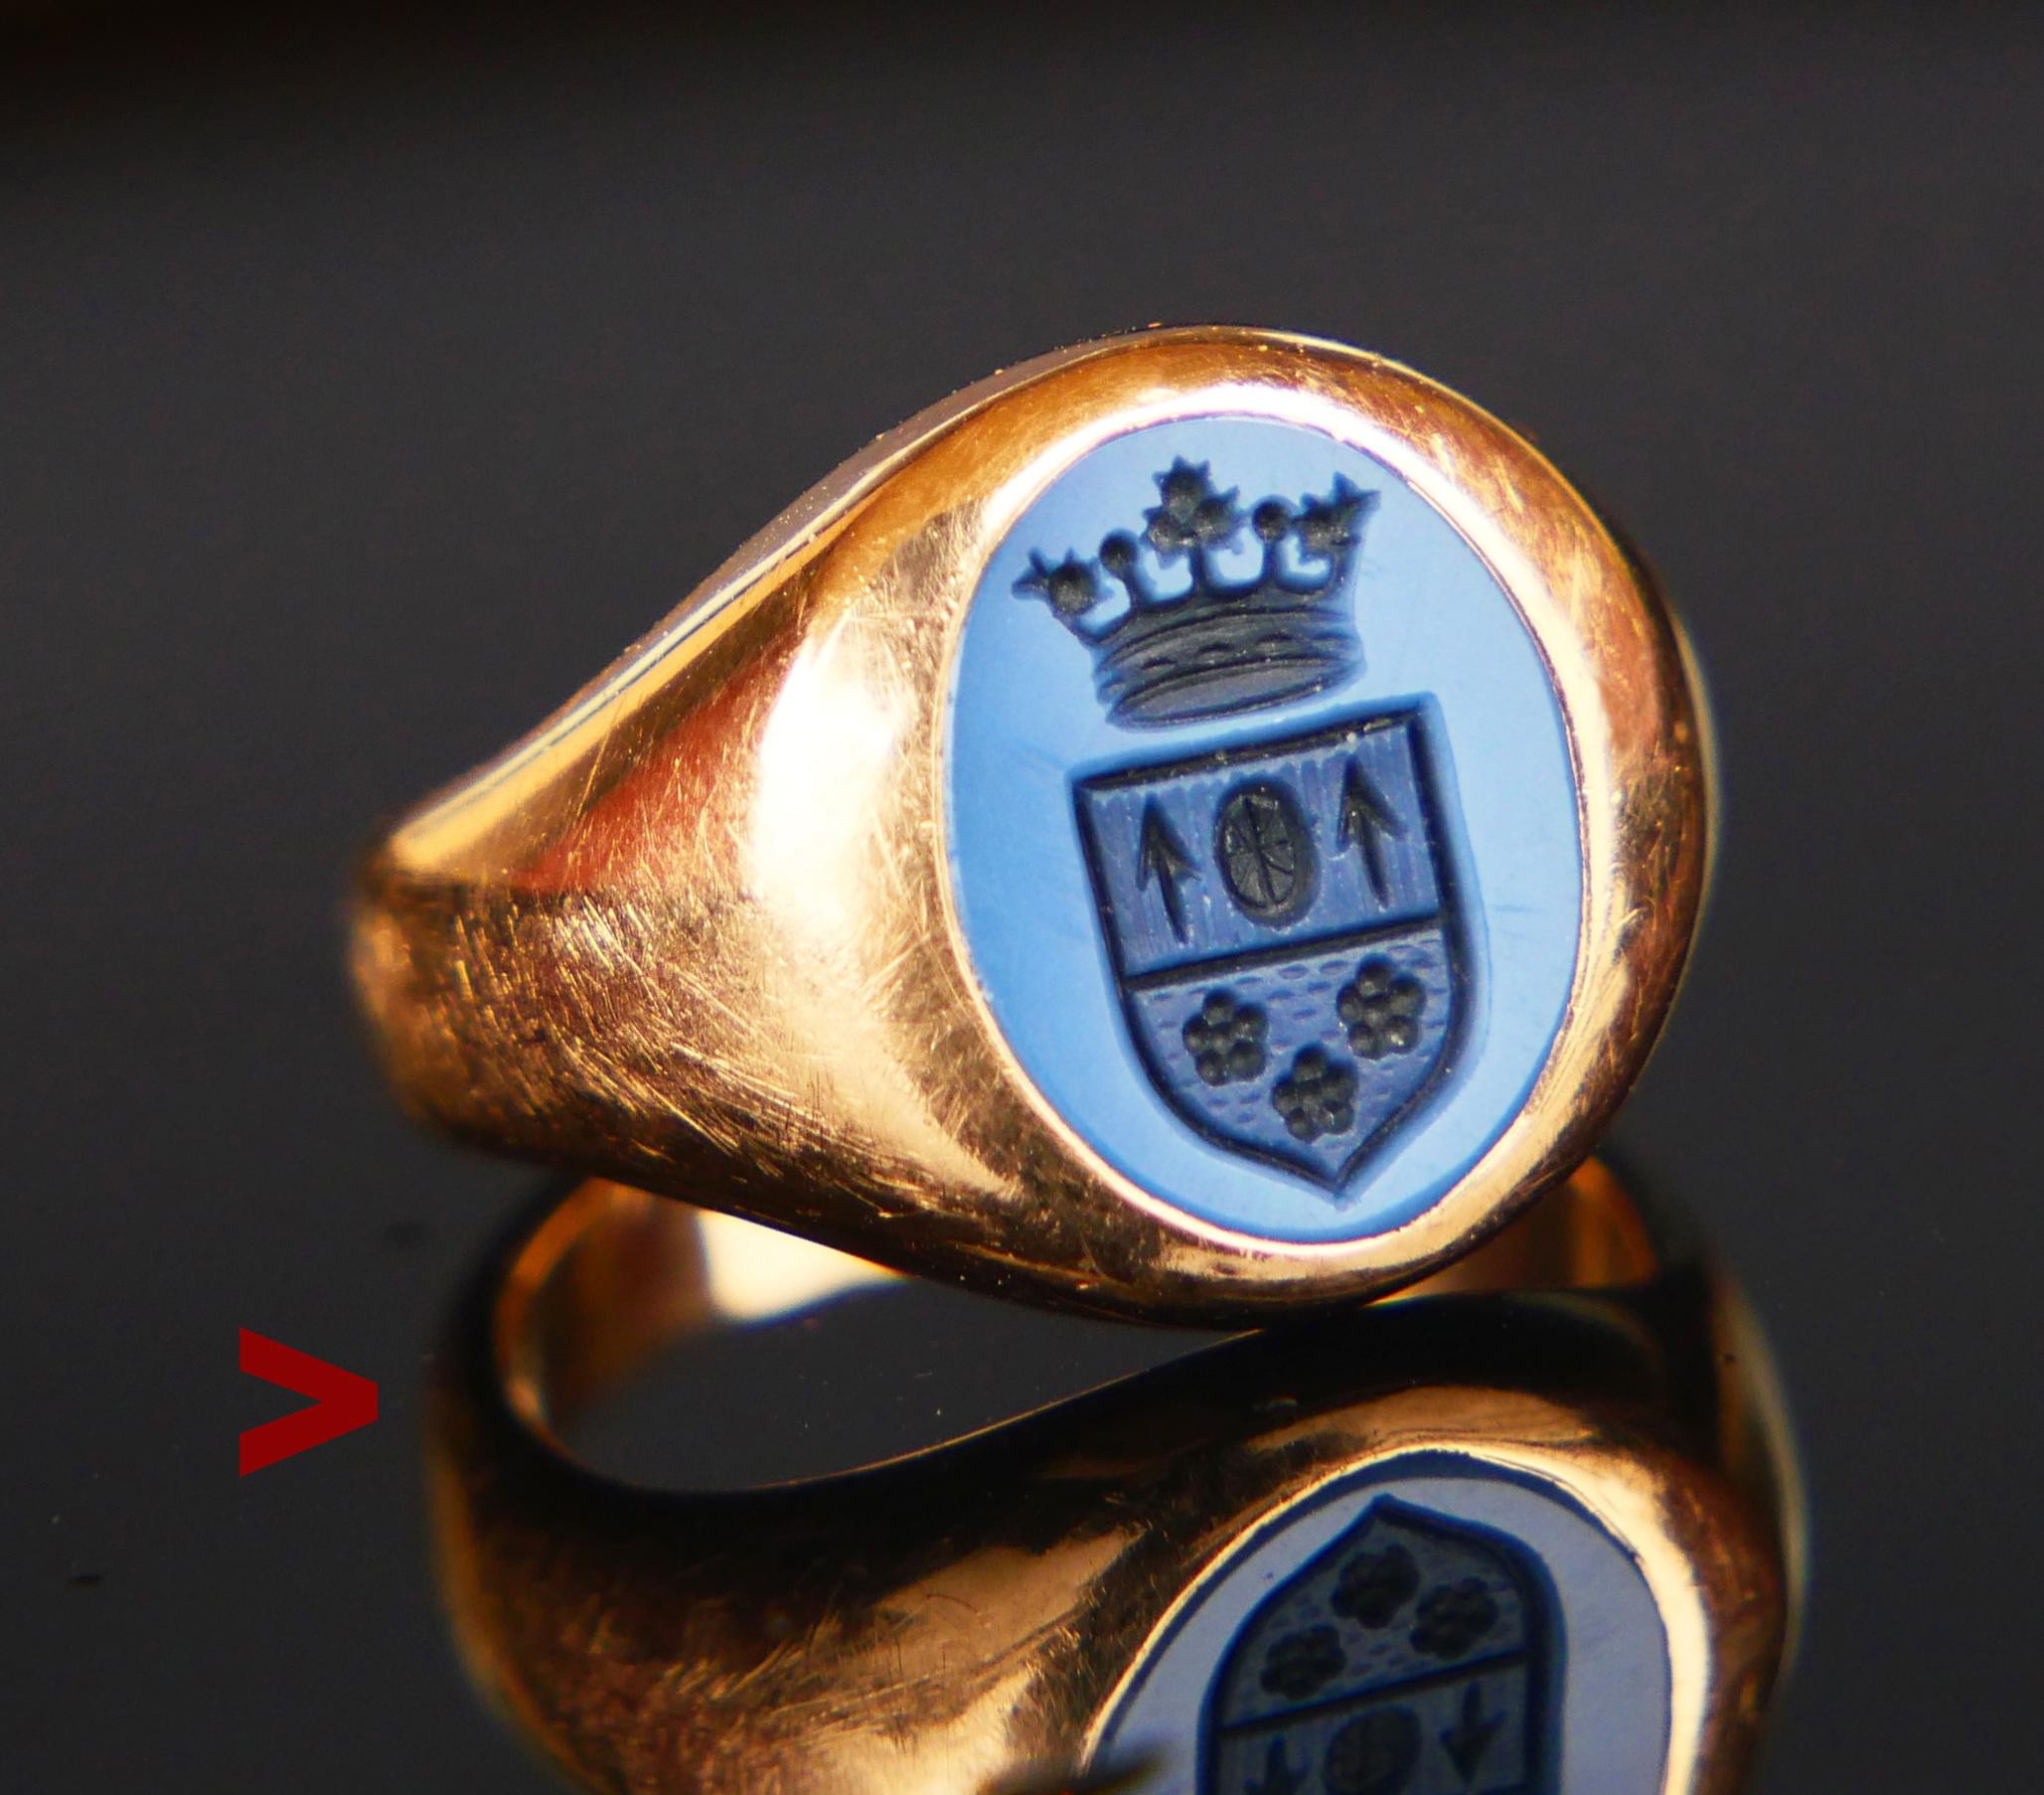 Bague ϟignet, fabriquée à la main vers les années 1900-1920 en or massif 18 carats, ornée d'une pierre naturelle de sardonyx à deux couches et d'un empalement héraldique gravé à la main. Intaglio de deux armoiries de familles nobles sous une